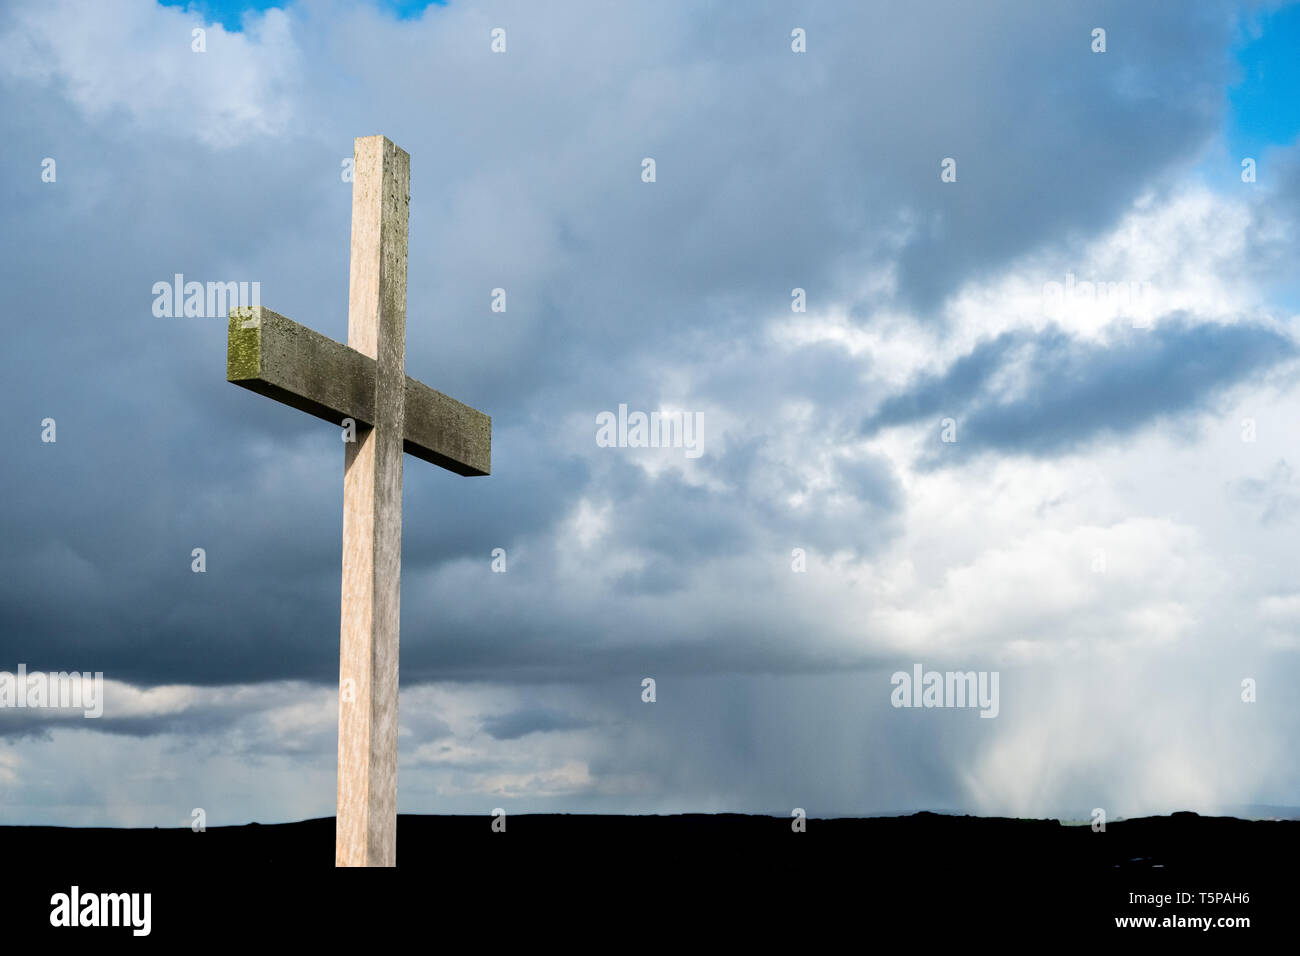 Croix chrétienne contre un ciel maussade, sombre Banque D'Images